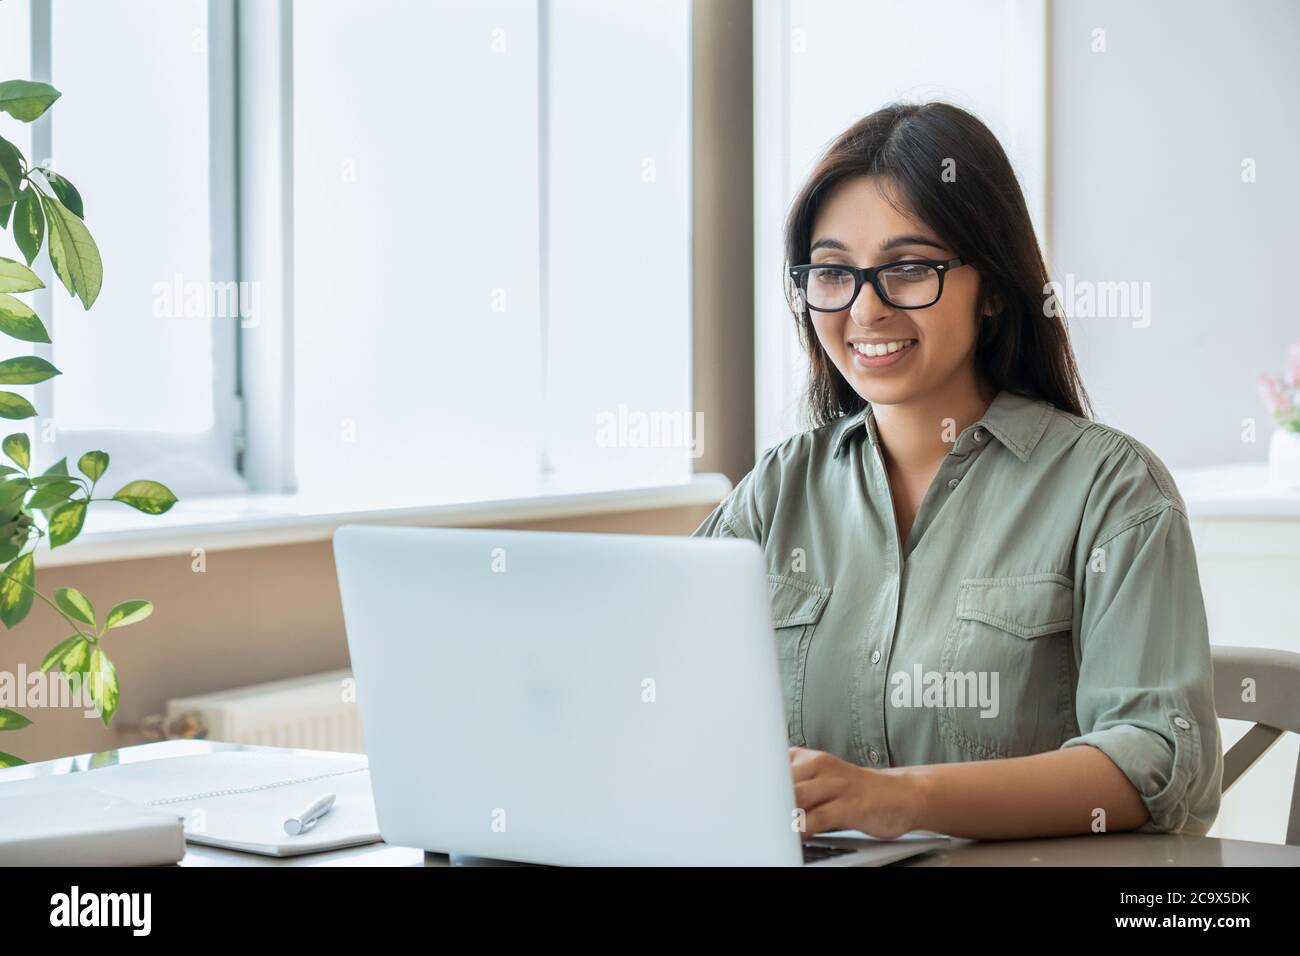 Une jeune femme indienne heureuse utilisant un ordinateur portable travailler étudier au bureau à domicile. Banque D'Images